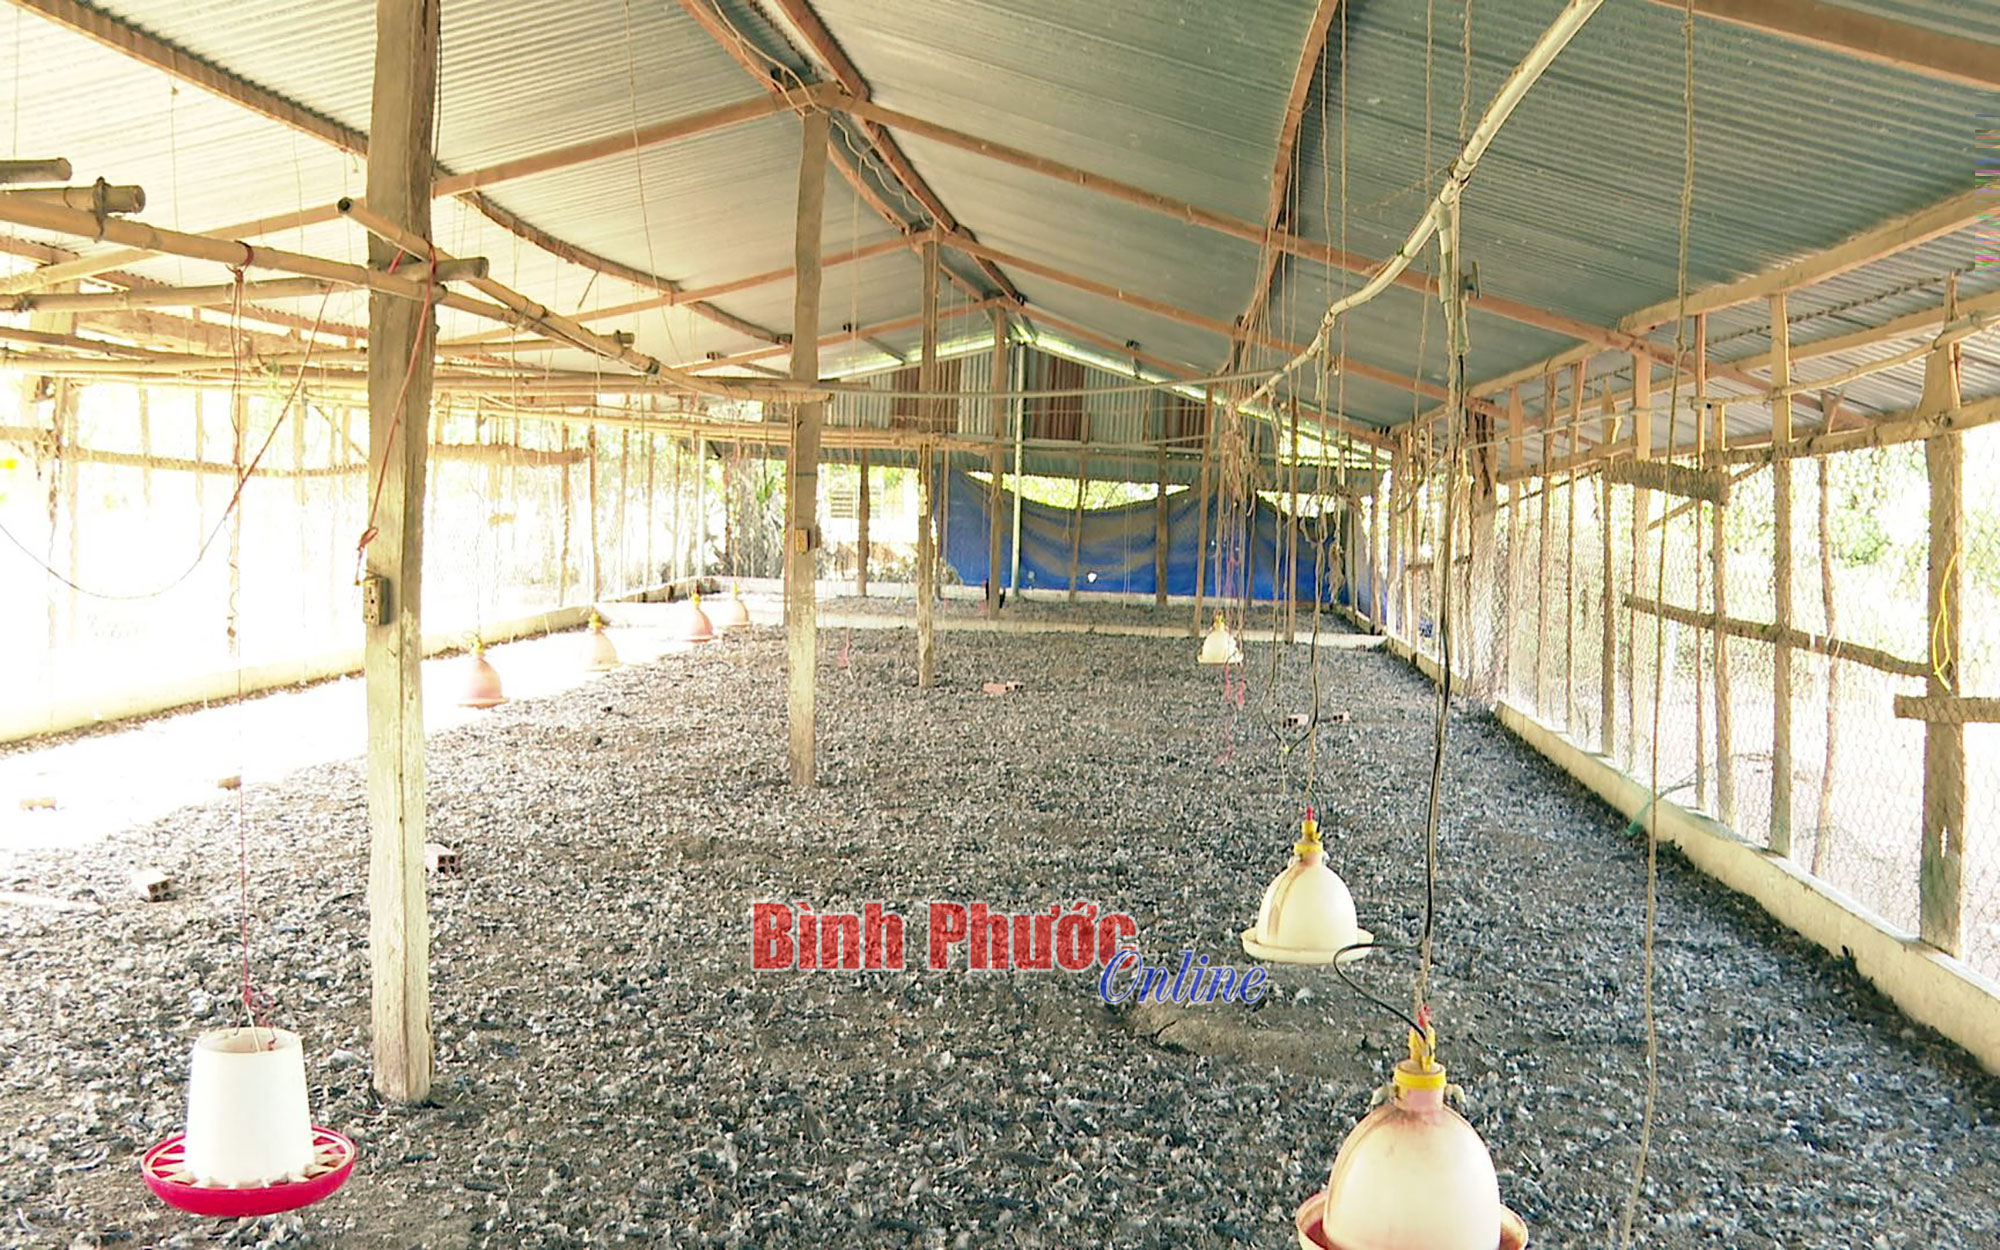 &quot;Dịch bỏ hoang chuồng trại&quot; từ nuôi heo lang sang nuôi gà ở Bình Phước, nông dân kêu nuôi lỗ nuôi làm  - Ảnh 1.